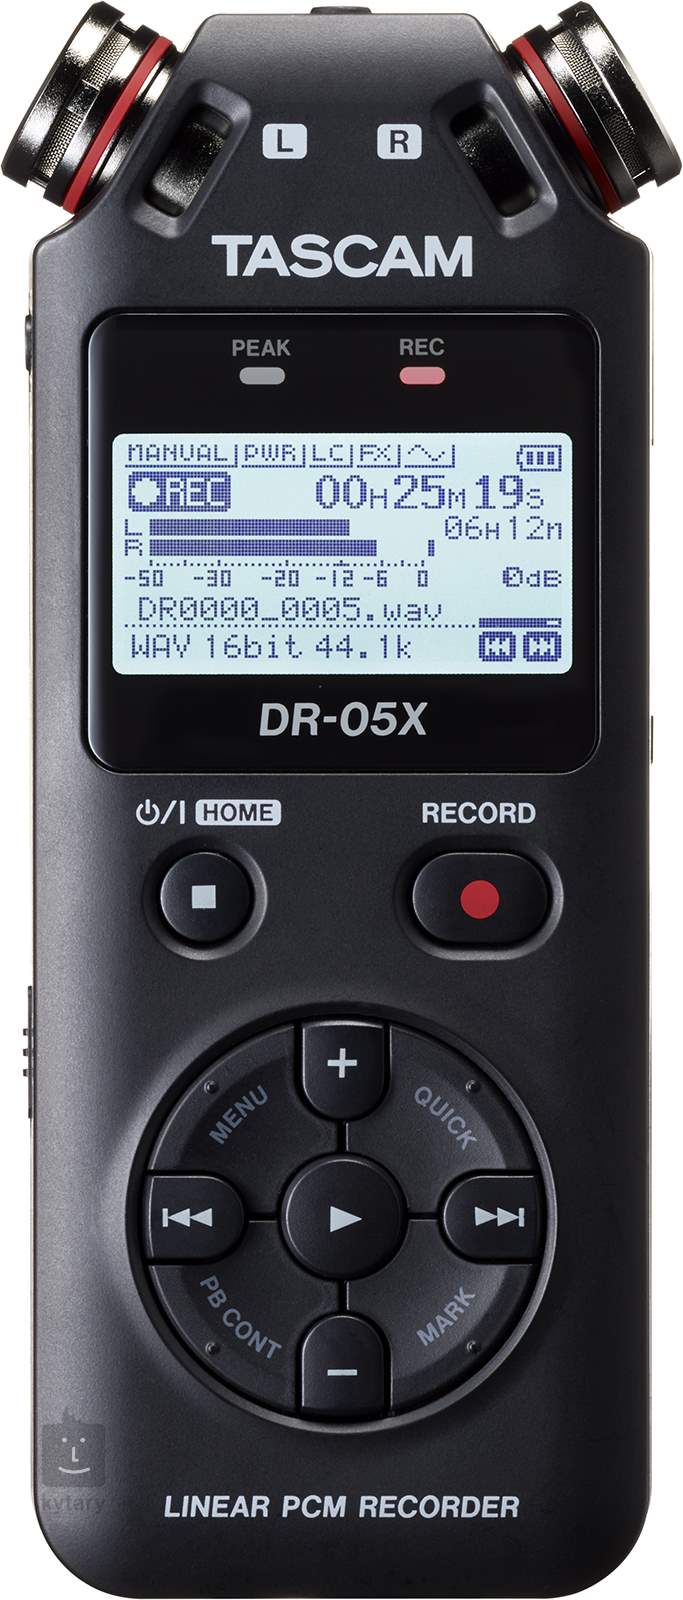 TASCAM DR-05X Pocket Recorder